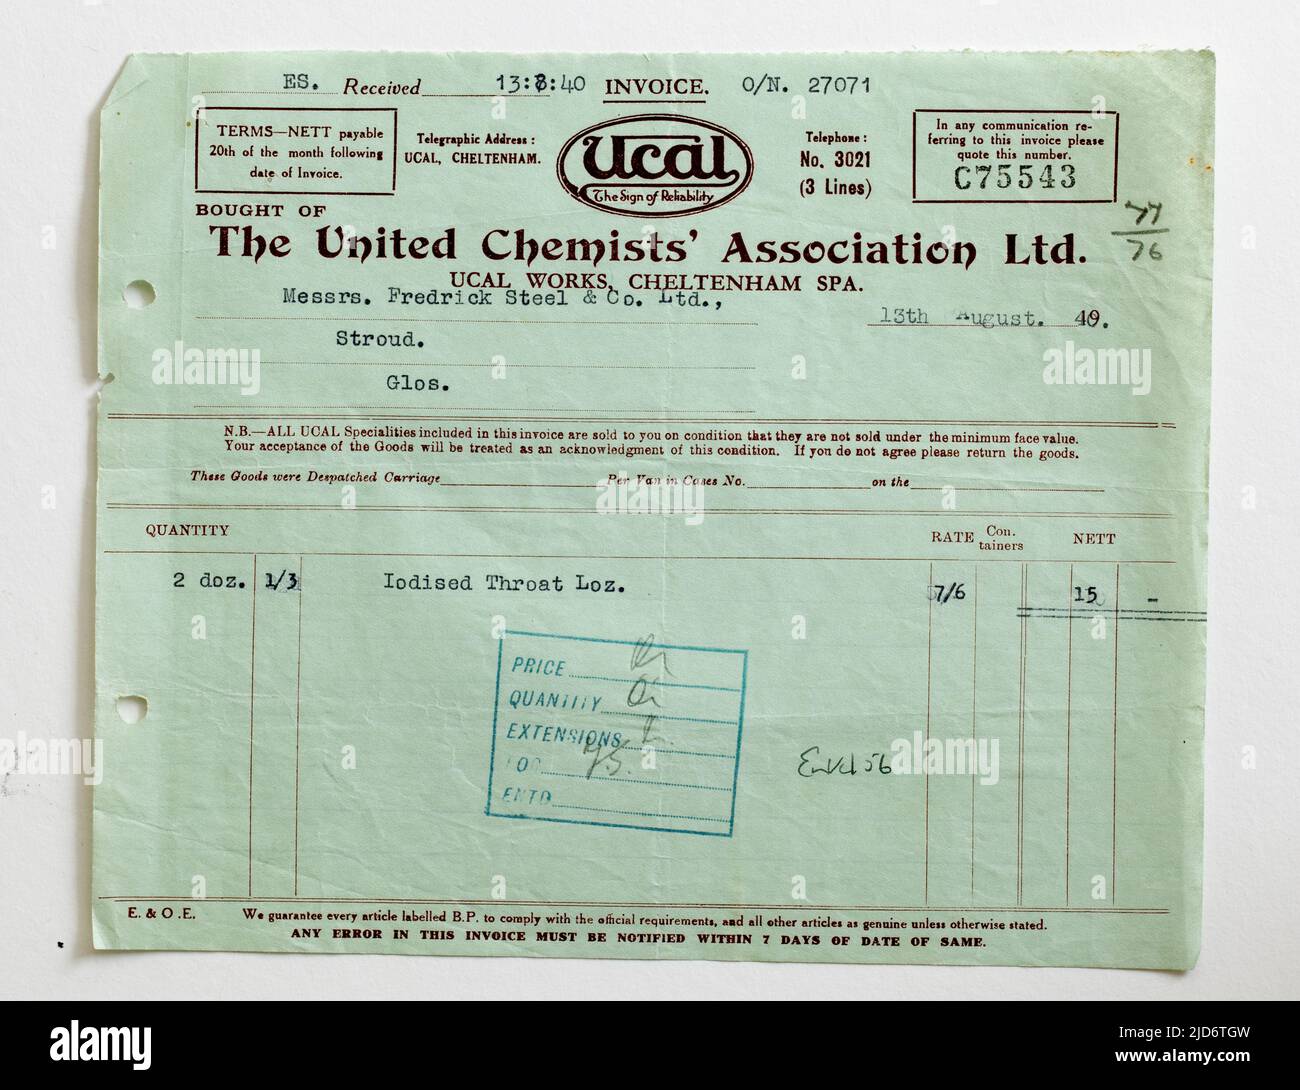 1940s Recepción de factura de ventas comerciales para suministros de United Chemists Association Ltd Foto de stock